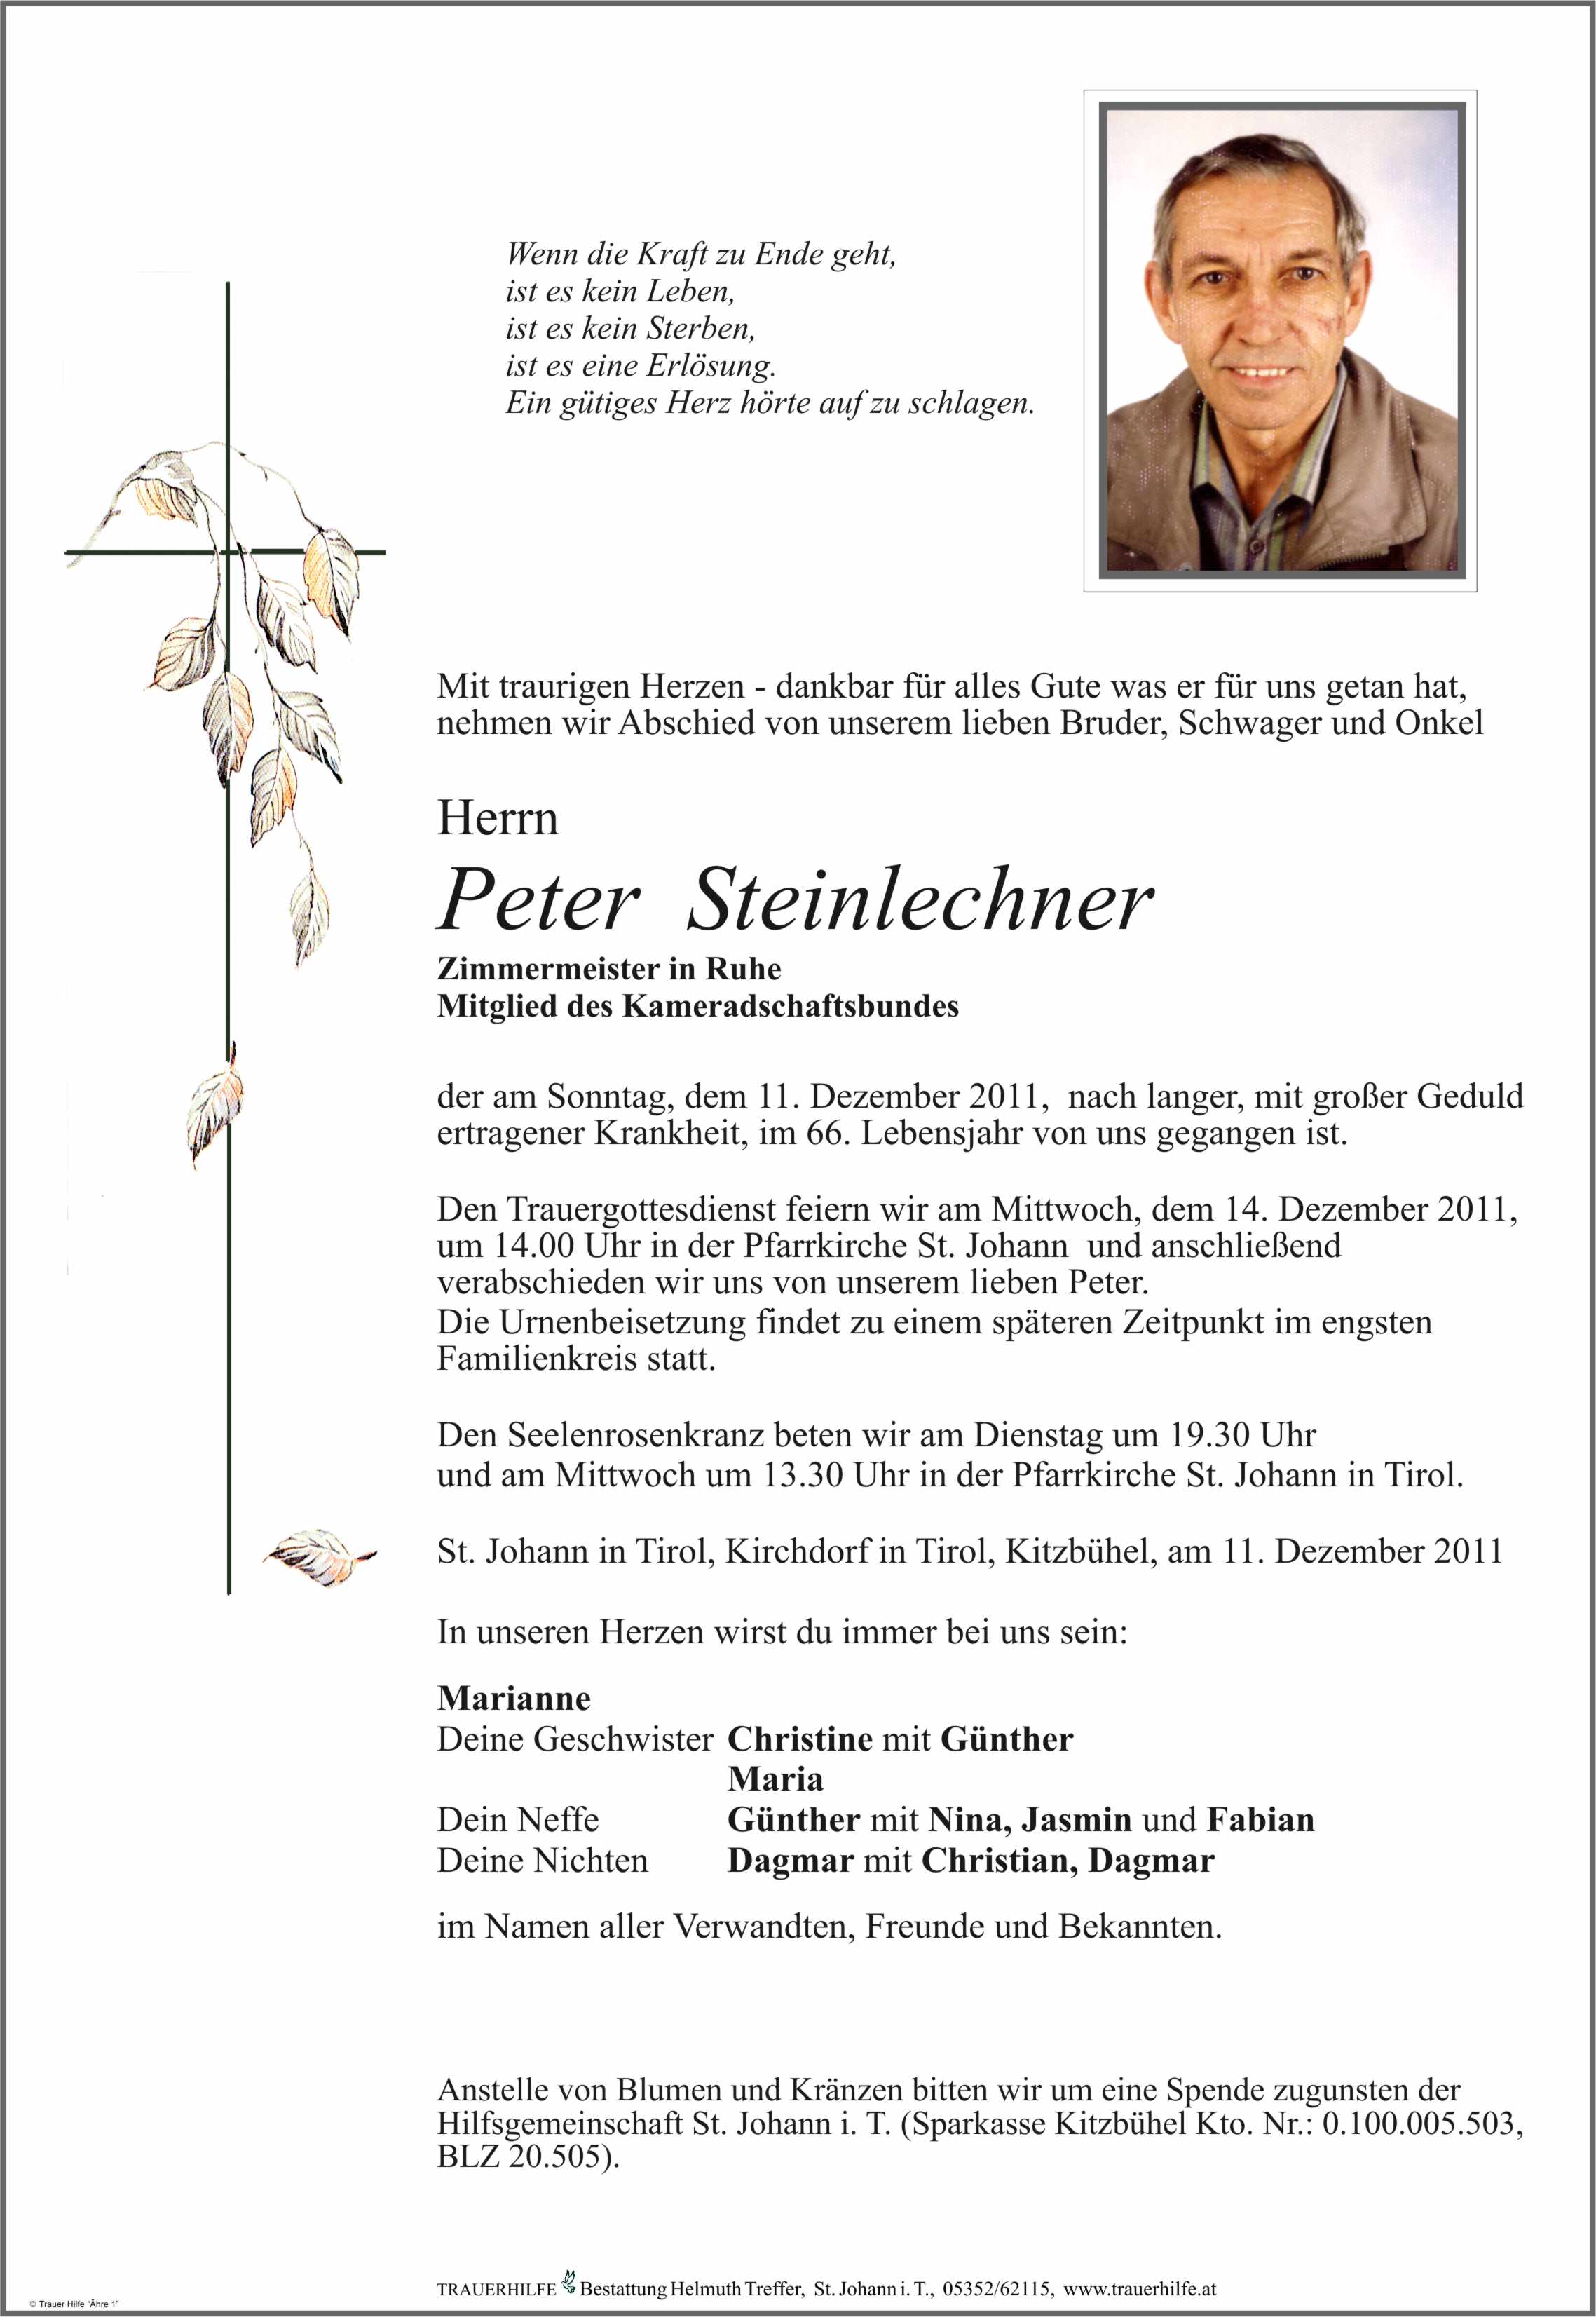 Peter Steinlechner